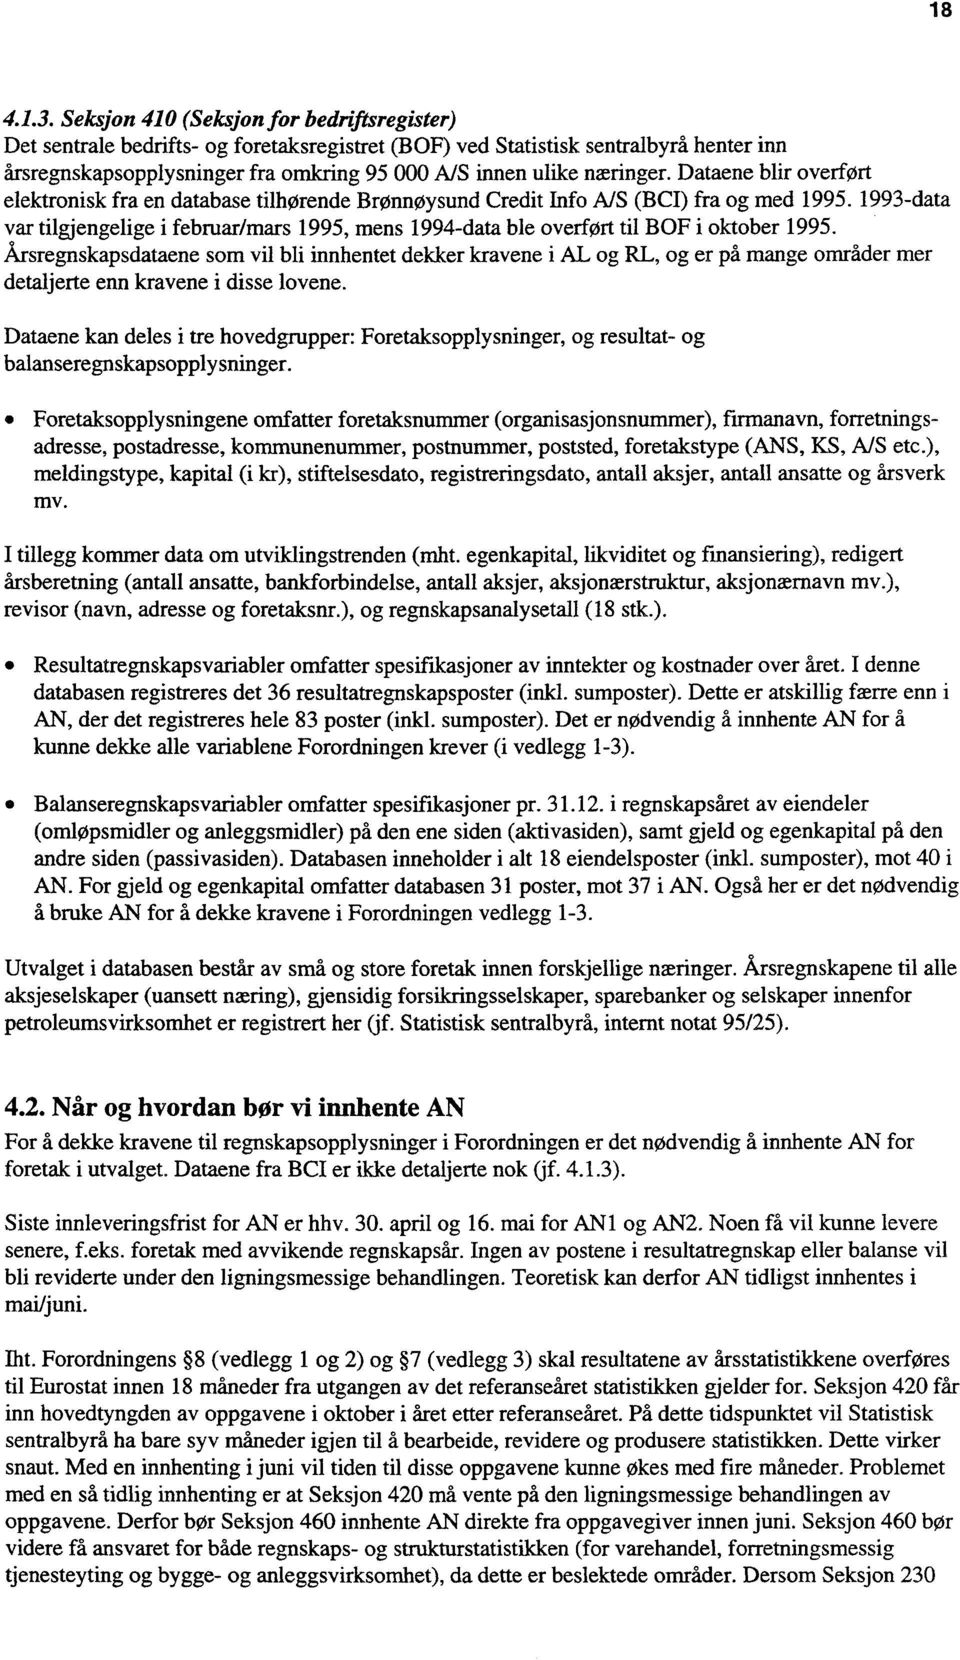 Dataene blir overført elektronisk fra en database tilhørende Brønnøysund Credit Info A/S (BCI) fra og med 1995.